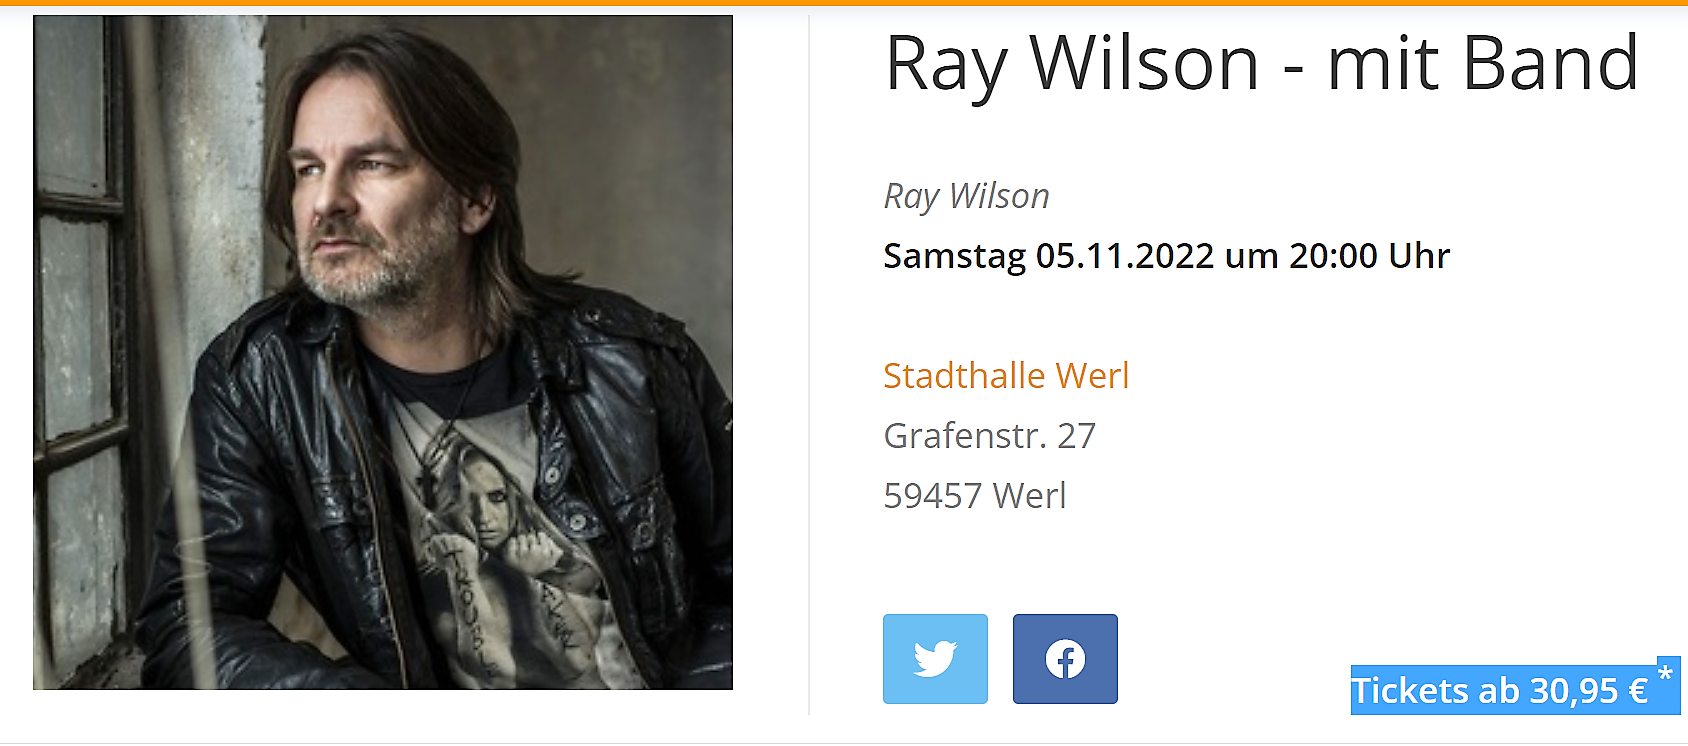 Ex-Genesis-Sänger Ray Wilson rockt am Samstag in Werl – 2×2 Karten zu gewinnen!